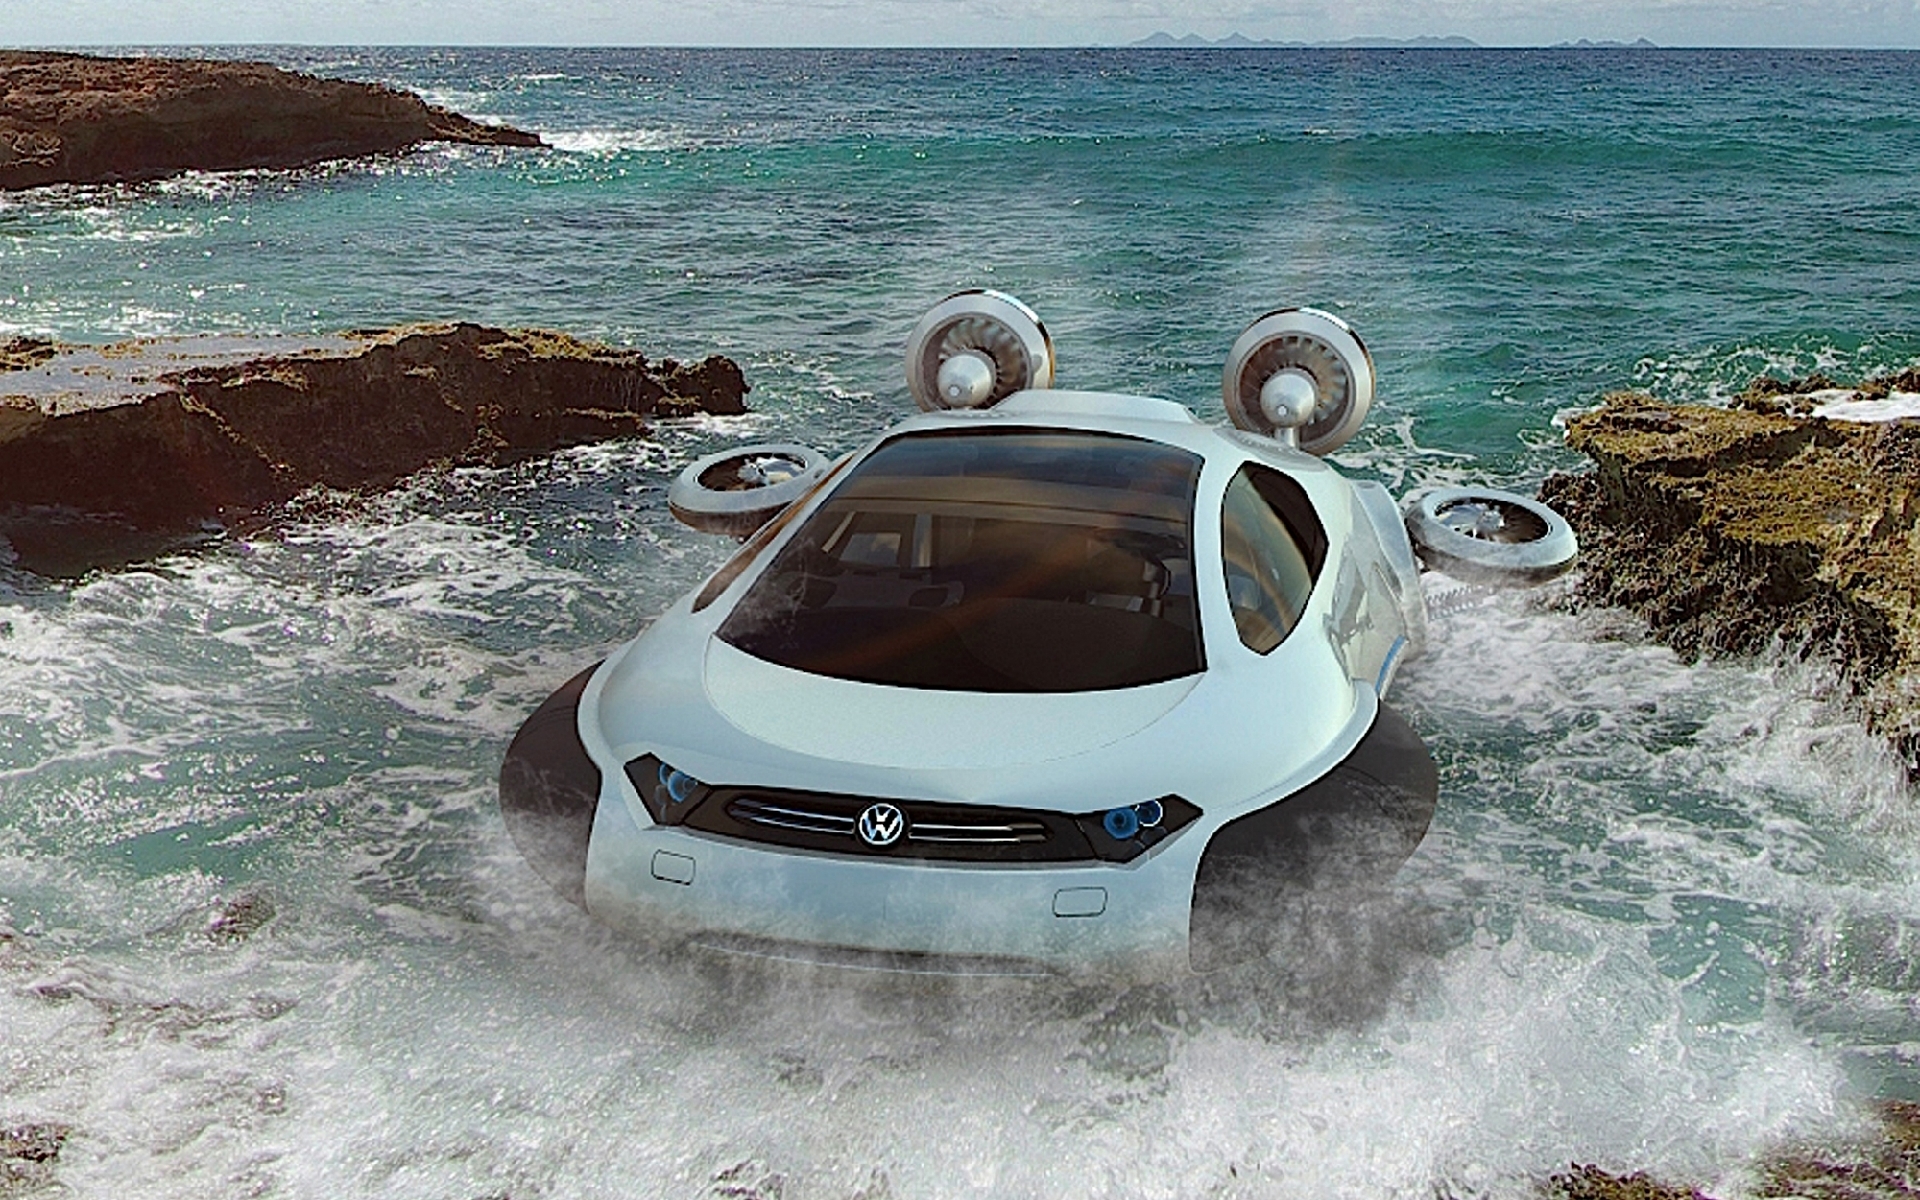 Volkswagen Aqua Hovercraft Concept car